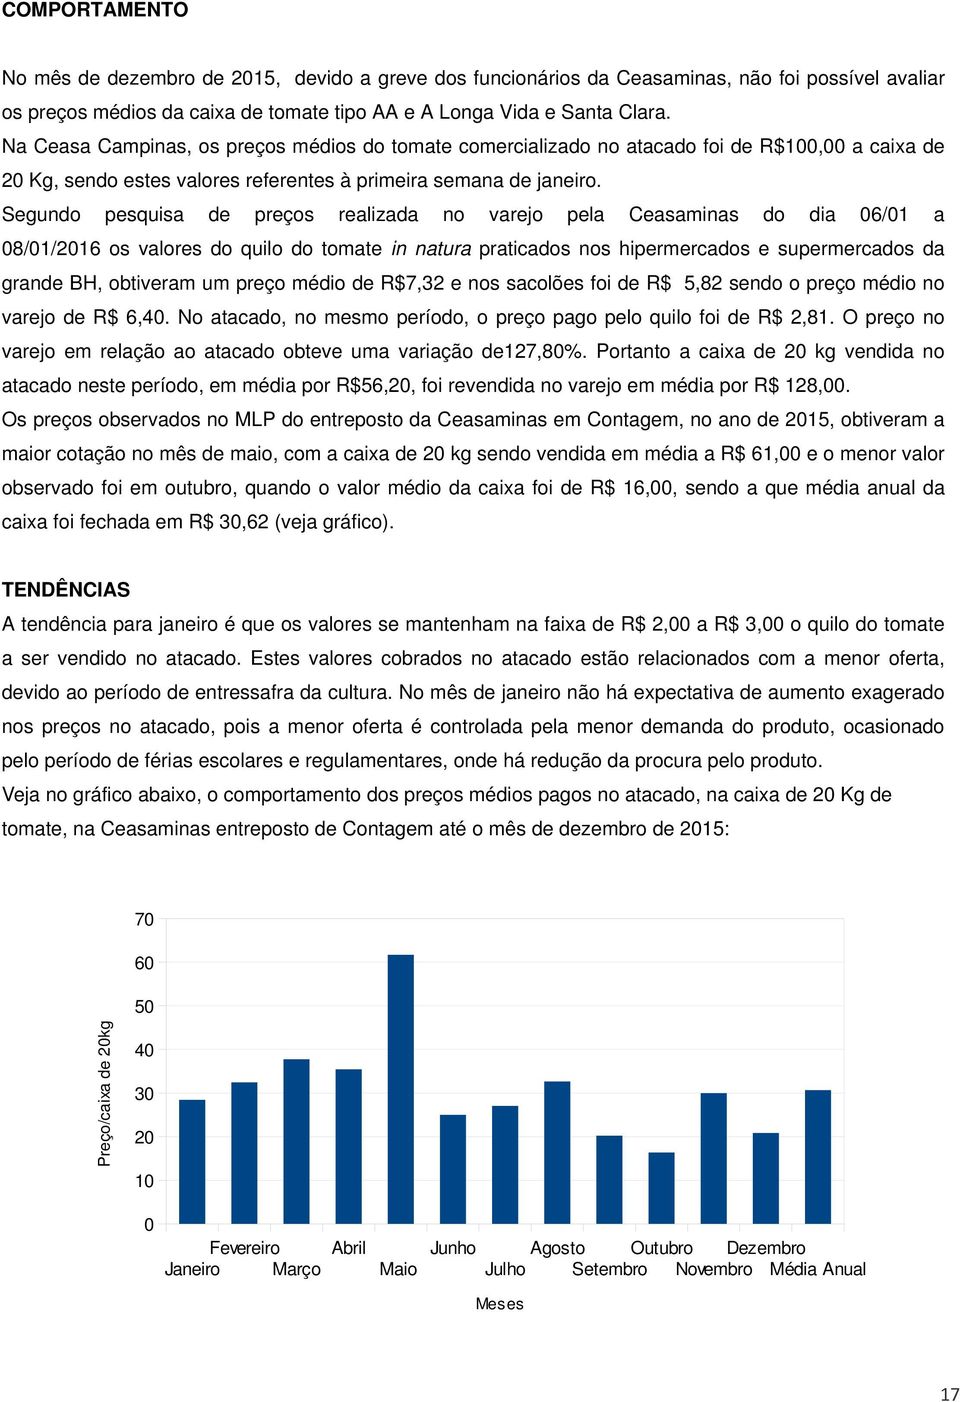 Segundo pesquisa de preços realizada no varejo pela Ceasaminas do dia 06/01 a 08/01/2016 os valores do quilo do tomate in natura praticados nos hipermercados e supermercados da grande BH, obtiveram